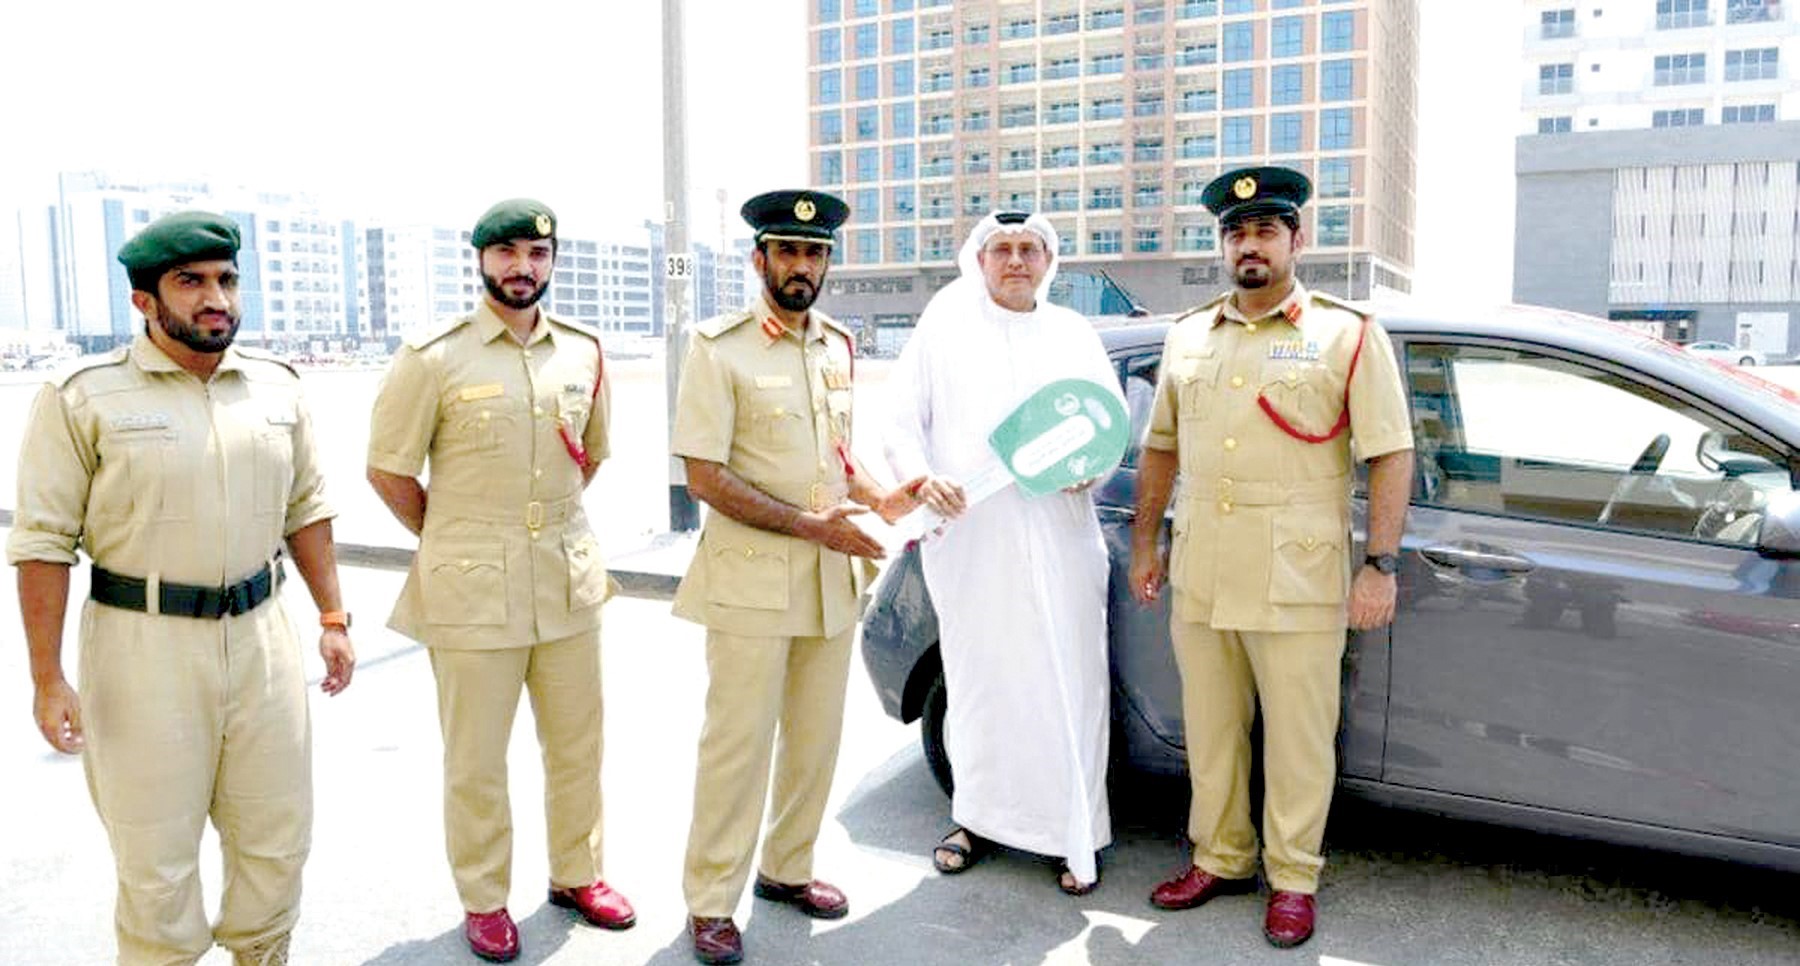 لإلتزامه بقوانين المرور.. مقيم عربي في دبي يفوز بسيارة «هيونداي»